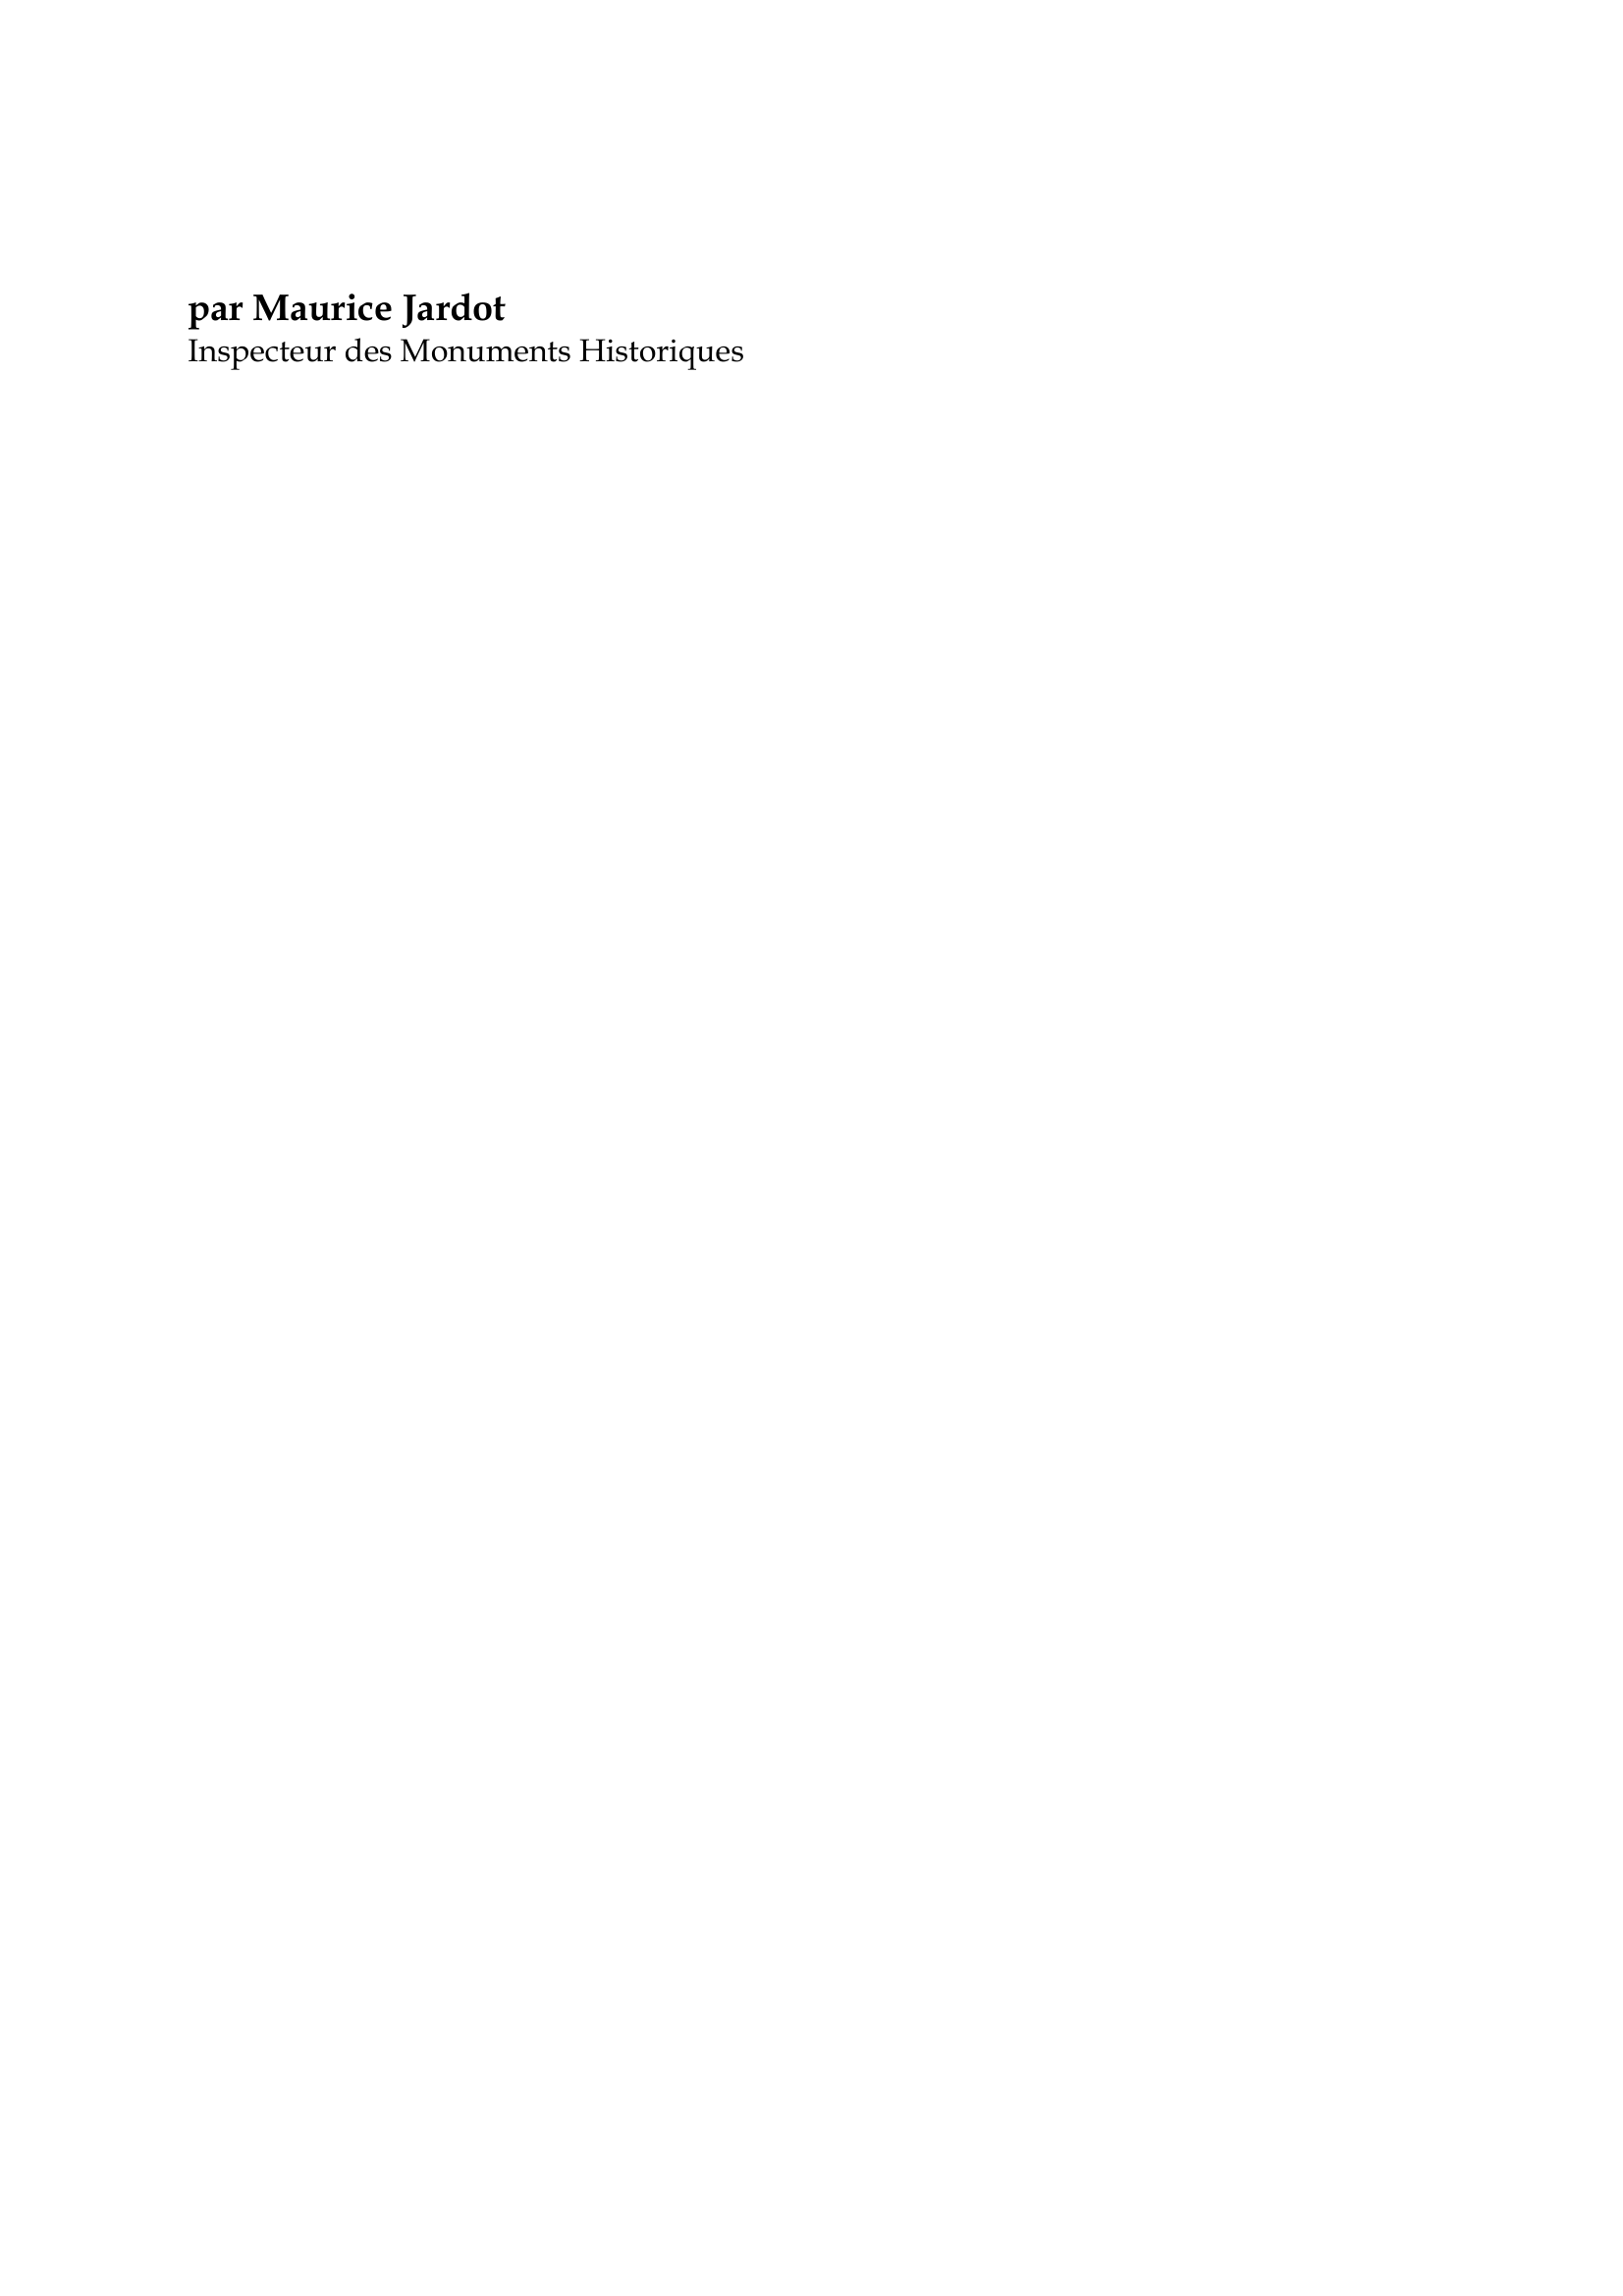 Prévisualisation du document Le Corbusier

par Maurice Jardot
Inspecteur des Monuments Historiques

Architecte urbaniste (l'un étant